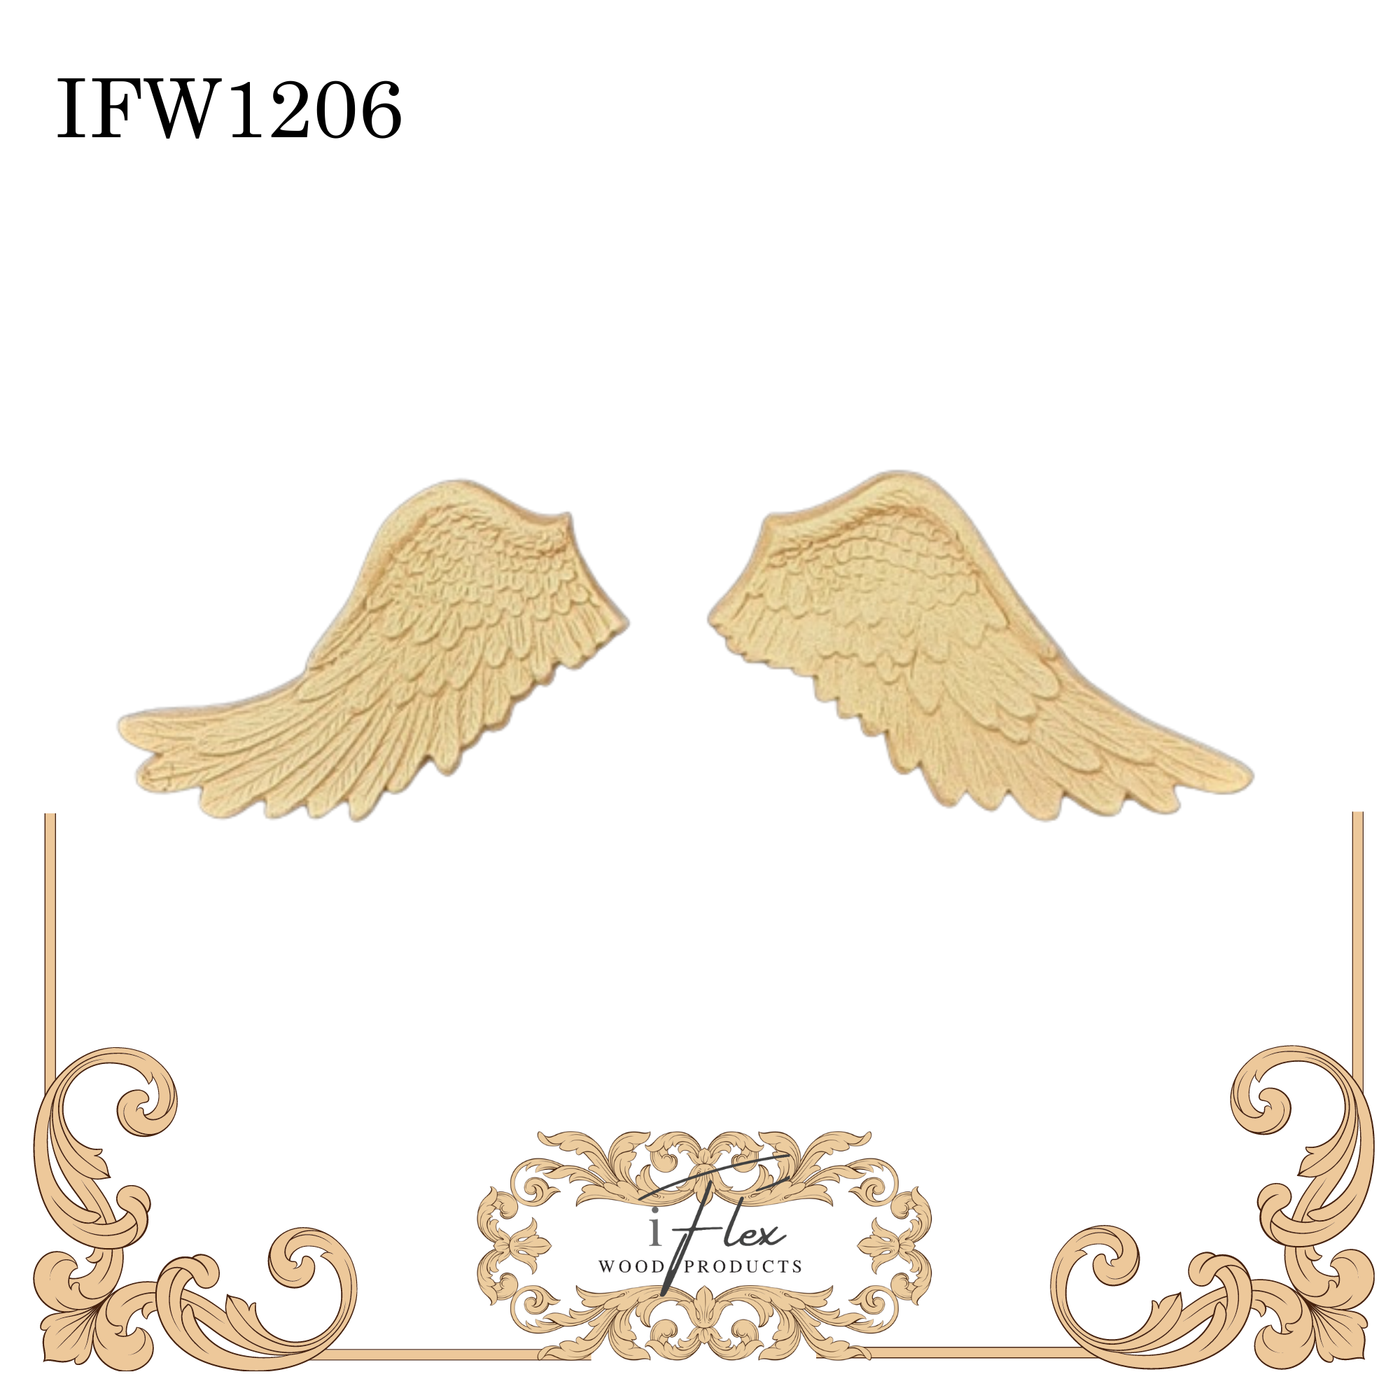 IFW 1206